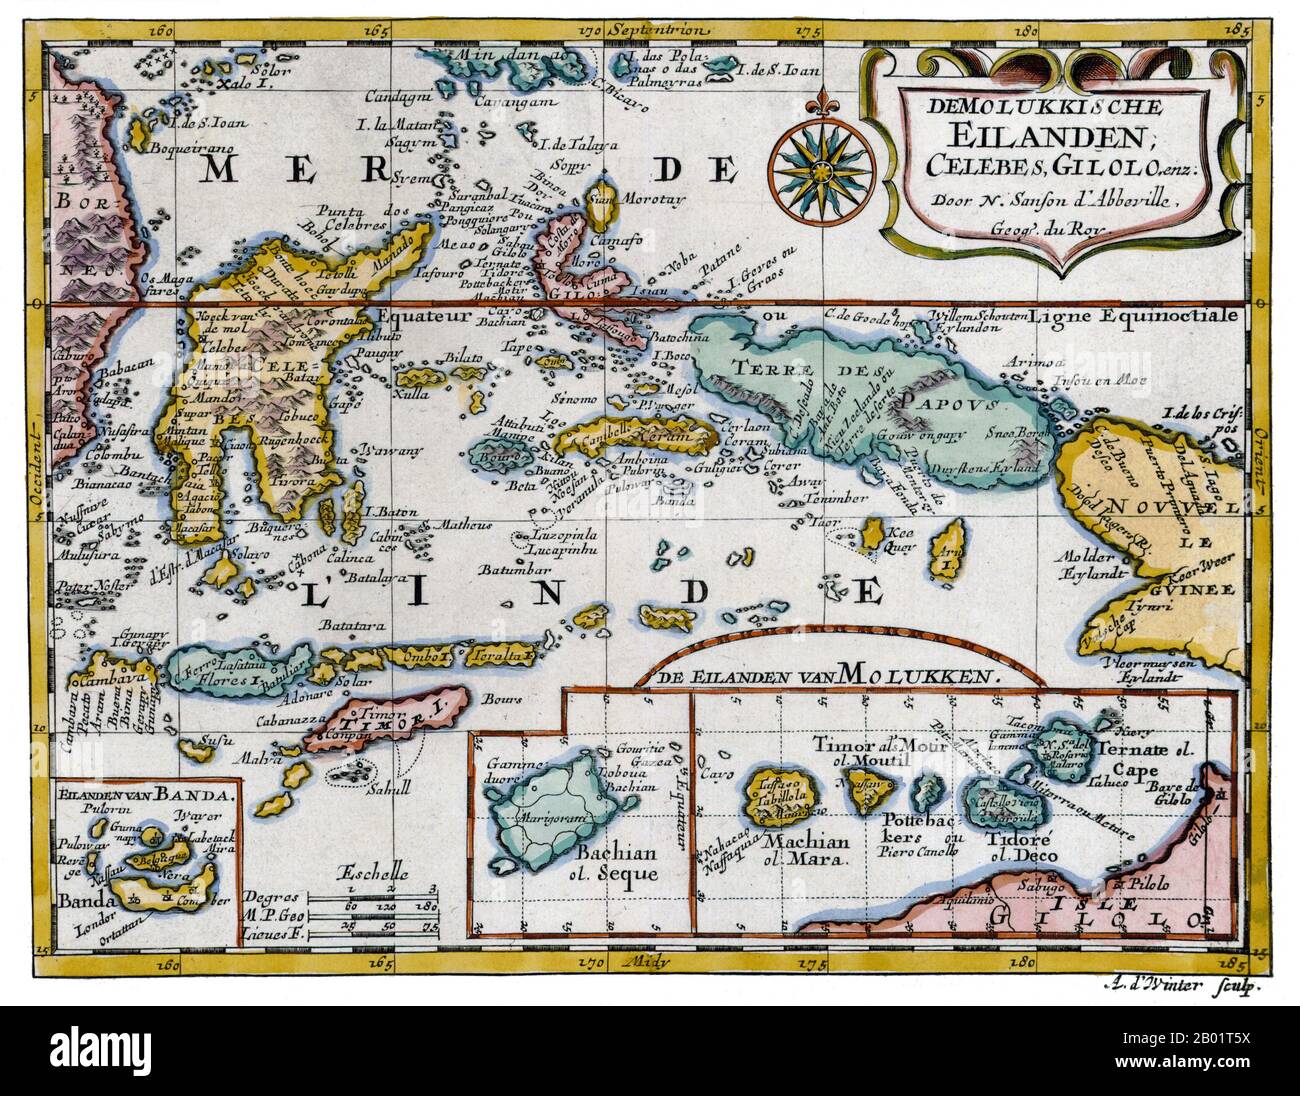 Indonésie : 'les Mioluccas, Célèbes, Gilolo'. Carte sur cuivre de Nicolas Sanson, Utrecht, 1683. Les îles Maluku (également connues sous le nom de Moluques, îles Moluques et îles aux épices) sont un archipel qui fait partie de l'Indonésie, et une partie de la région maritime de l'Asie du Sud-est. Sur le plan tectonique, ils sont situés sur la plaque Halmahera dans la zone de collision maritime des Moluques. Géographiquement, ils sont situés à l'est de Sulawesi (Célèbes), à l'ouest de la Nouvelle-Guinée, et au nord et à l'est du Timor. La plupart des îles sont montagneuses, certaines avec des volcans actifs, et bénéficient d'un climat humide. Banque D'Images